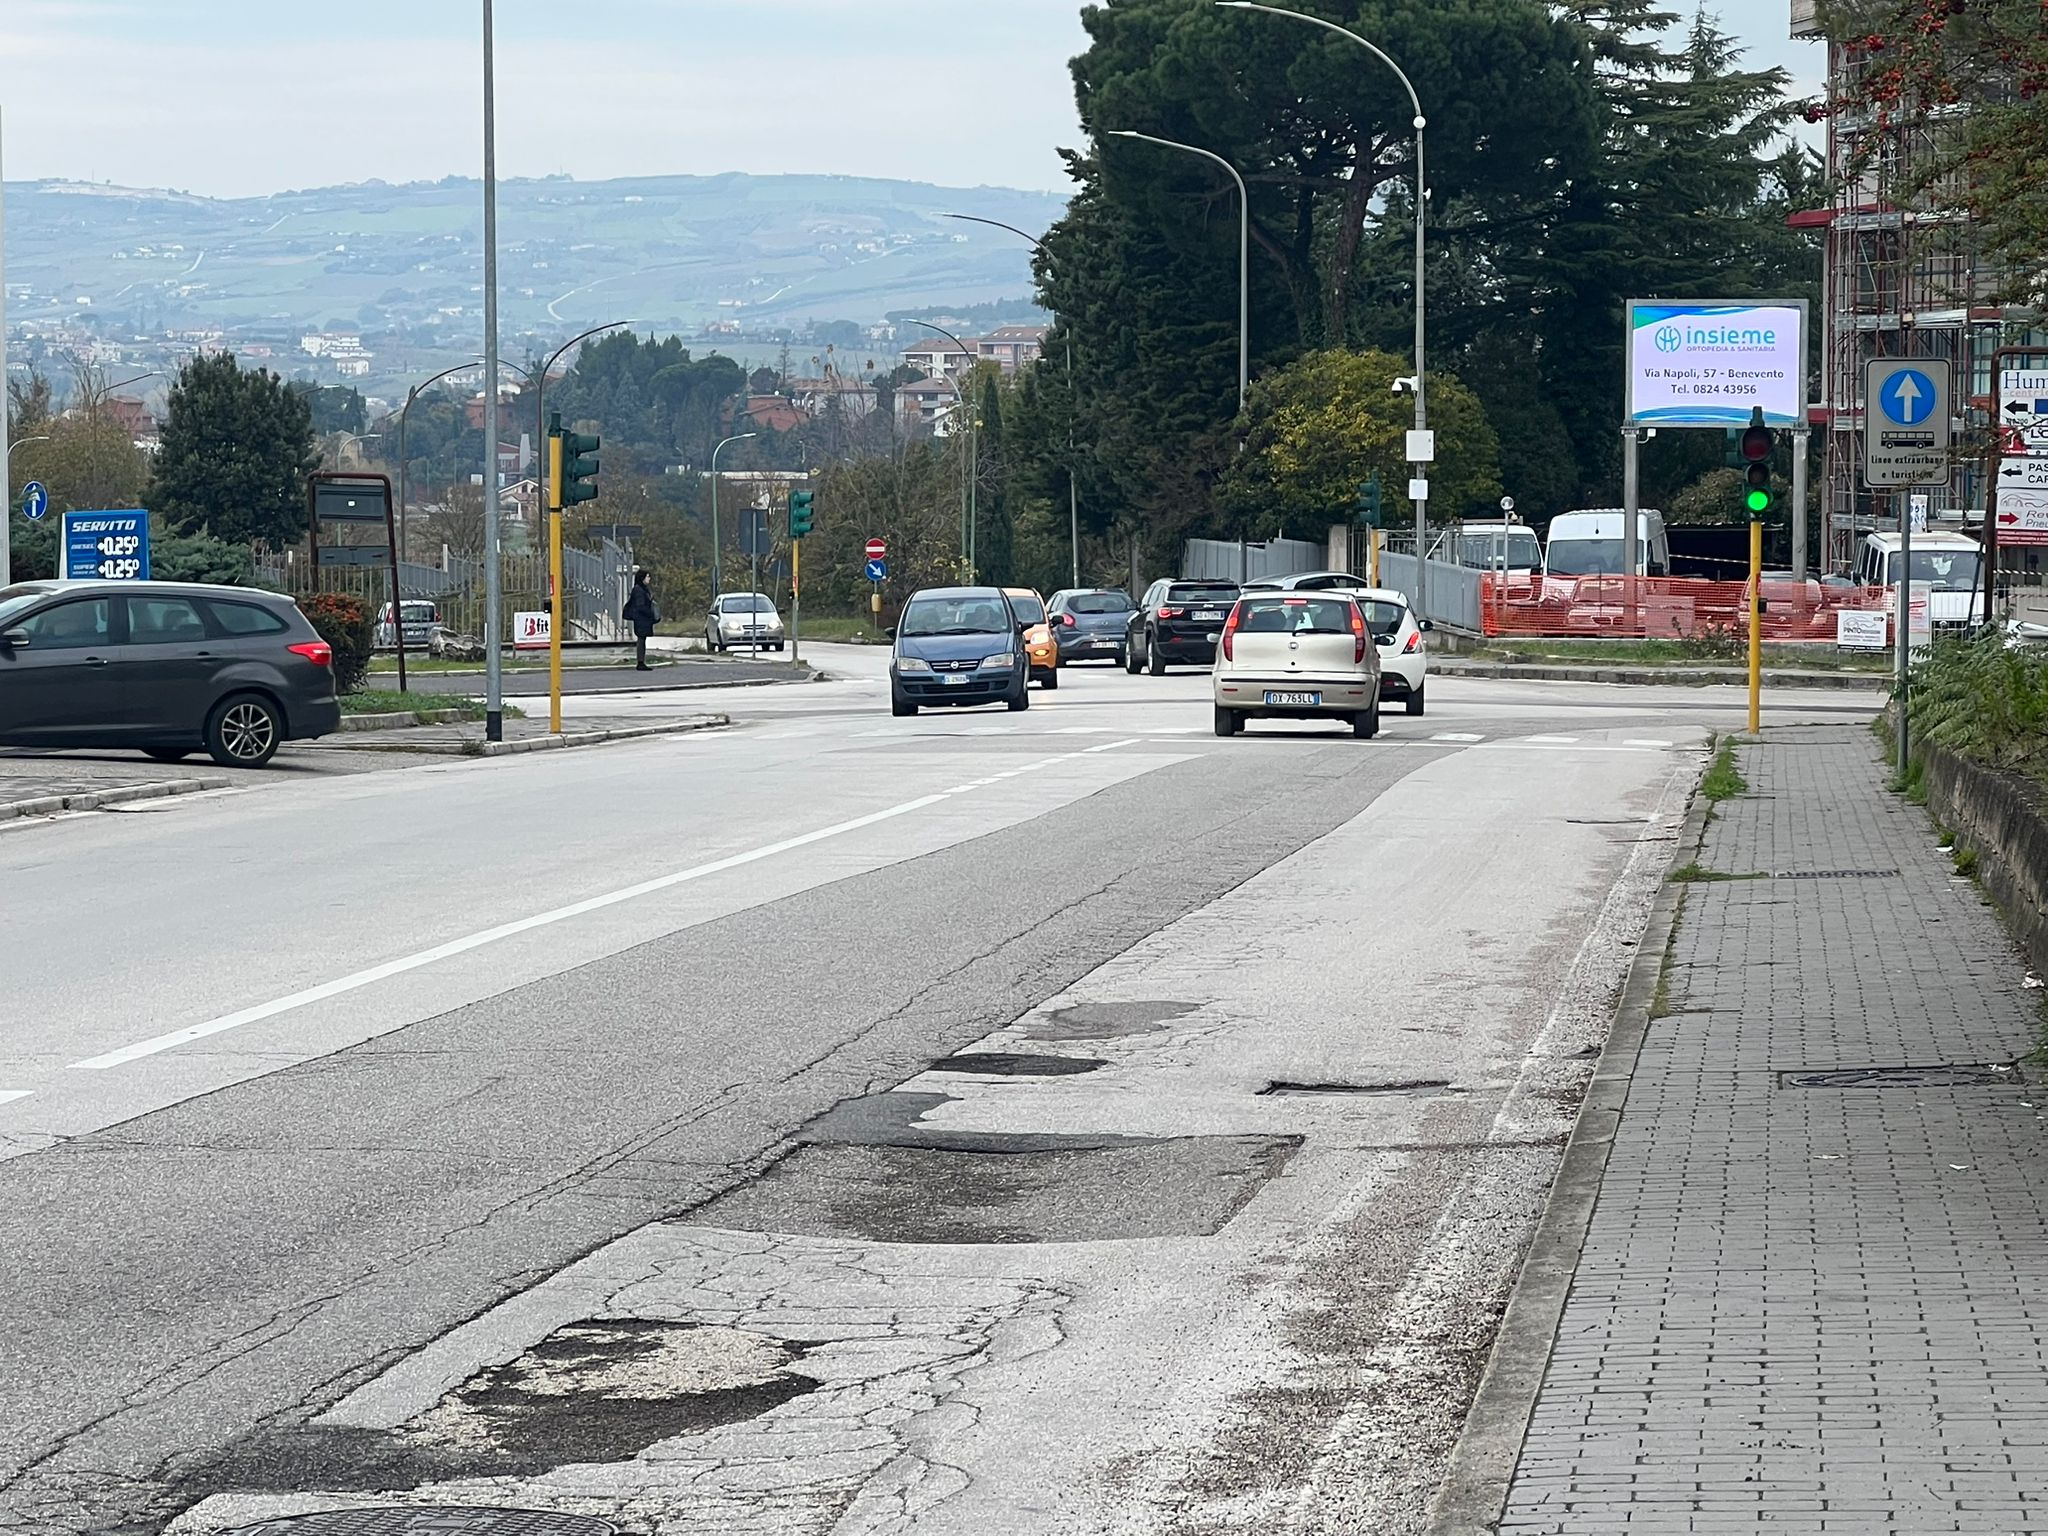 Traffico tra via Nenni e via Vetrone, la Giunta approva i lavori per una terza corsia e una mini rotatoria